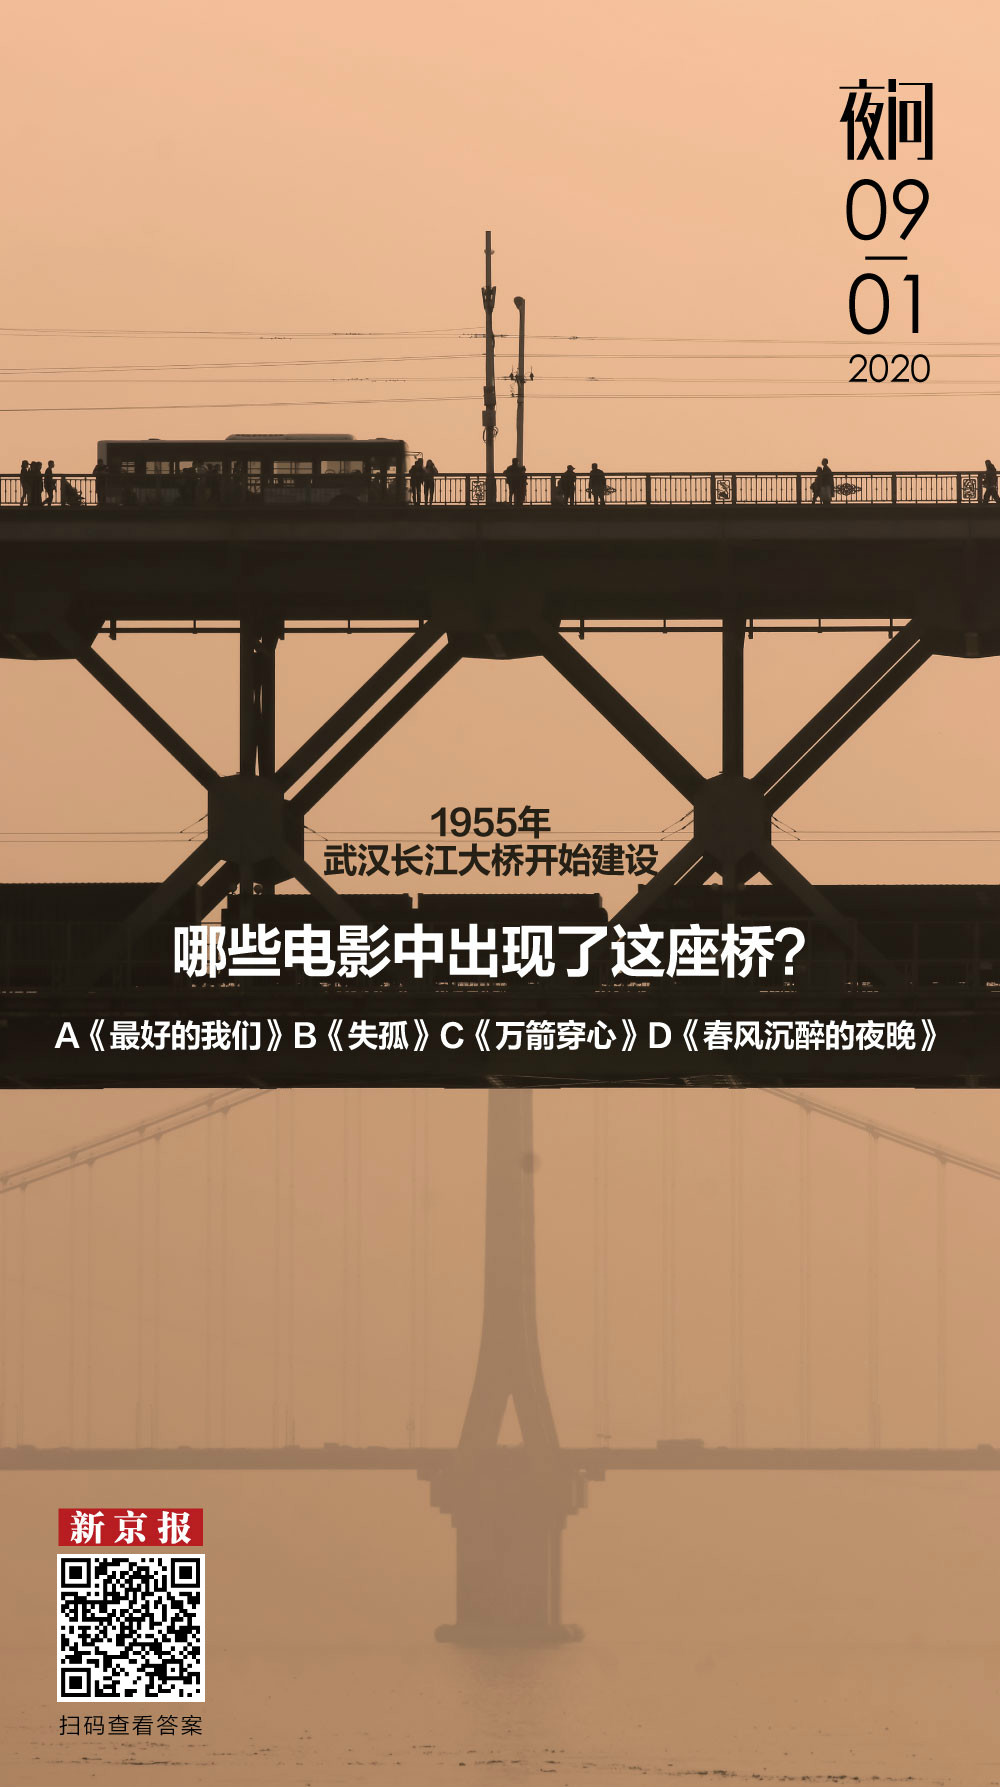 武汉长江大桥“见证”了这些影片中主人公的悲喜丨夜问 - 娱乐 - 新京报网